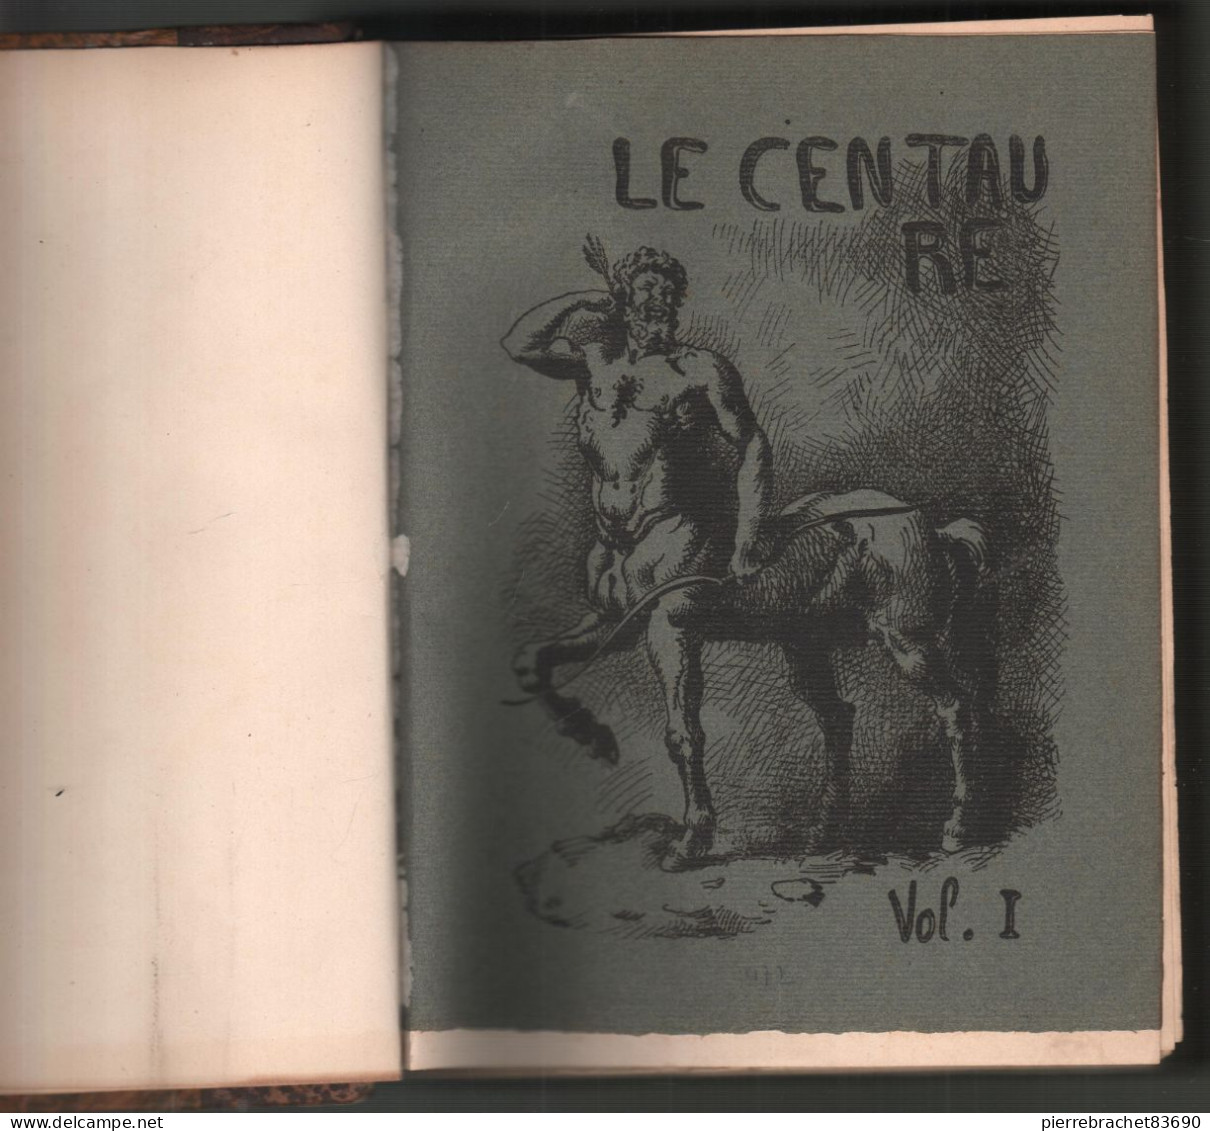 Collectif. Revue Le Centaure. 2 Volumes Reliés En Un Seul. - Non Classés